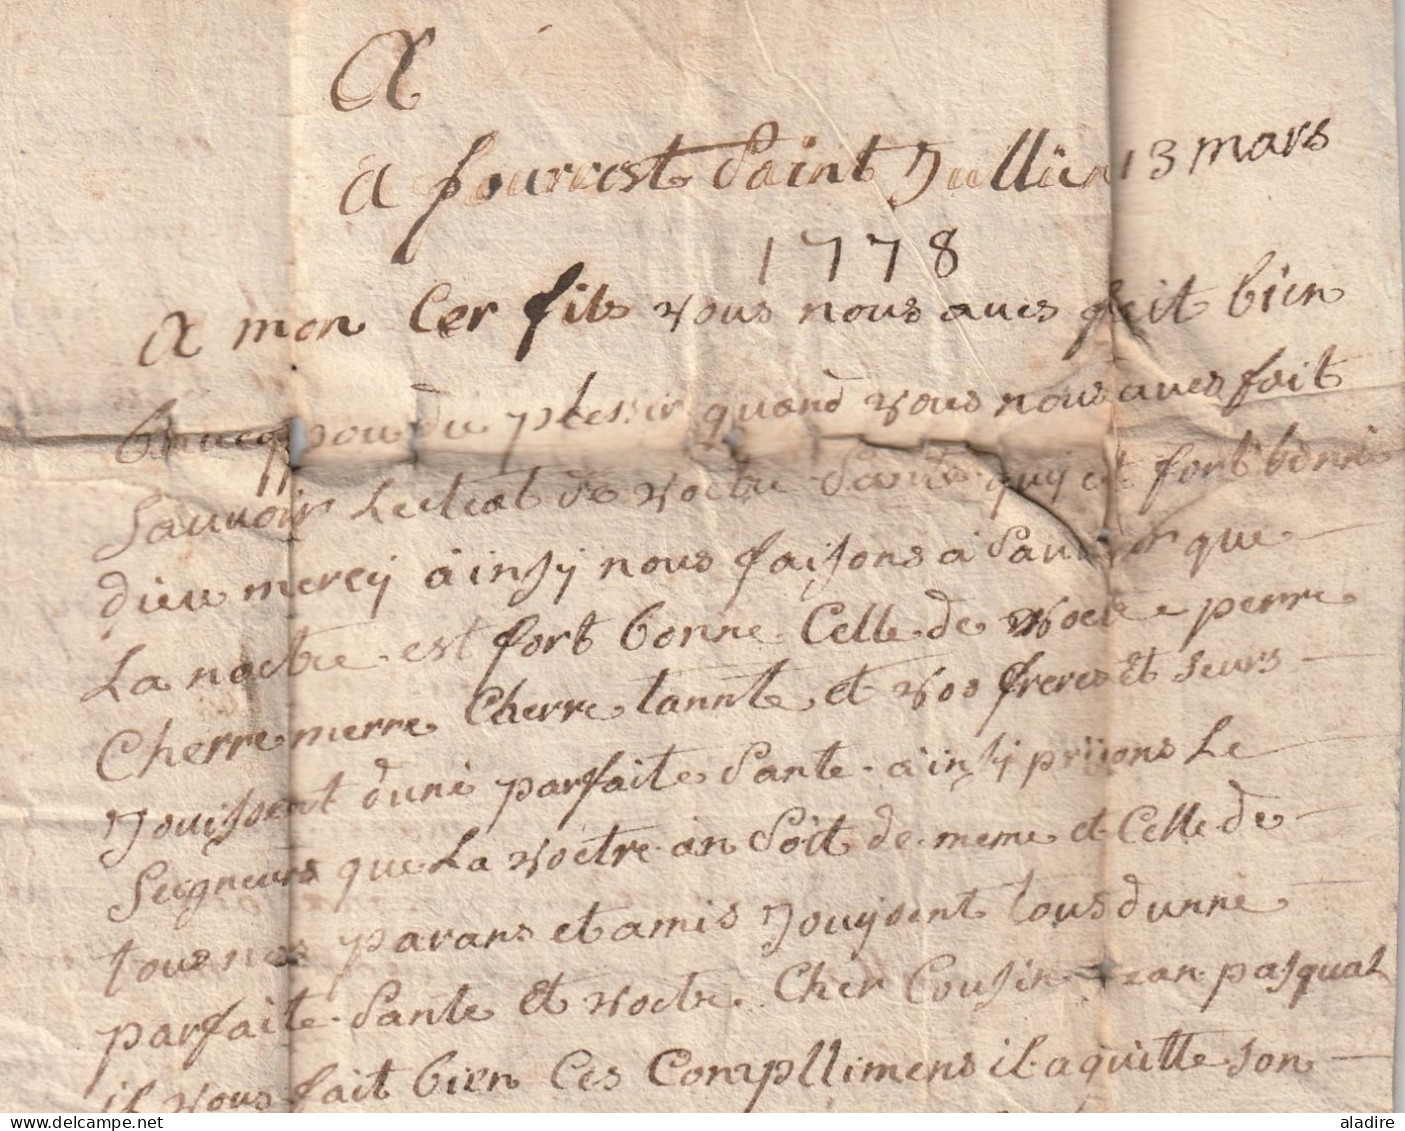 1778 - Marque postale sur lettre avec corresp paternelle de 3 p vers Lion LYON, en diligence - taxe 4 - règne Louis XVI